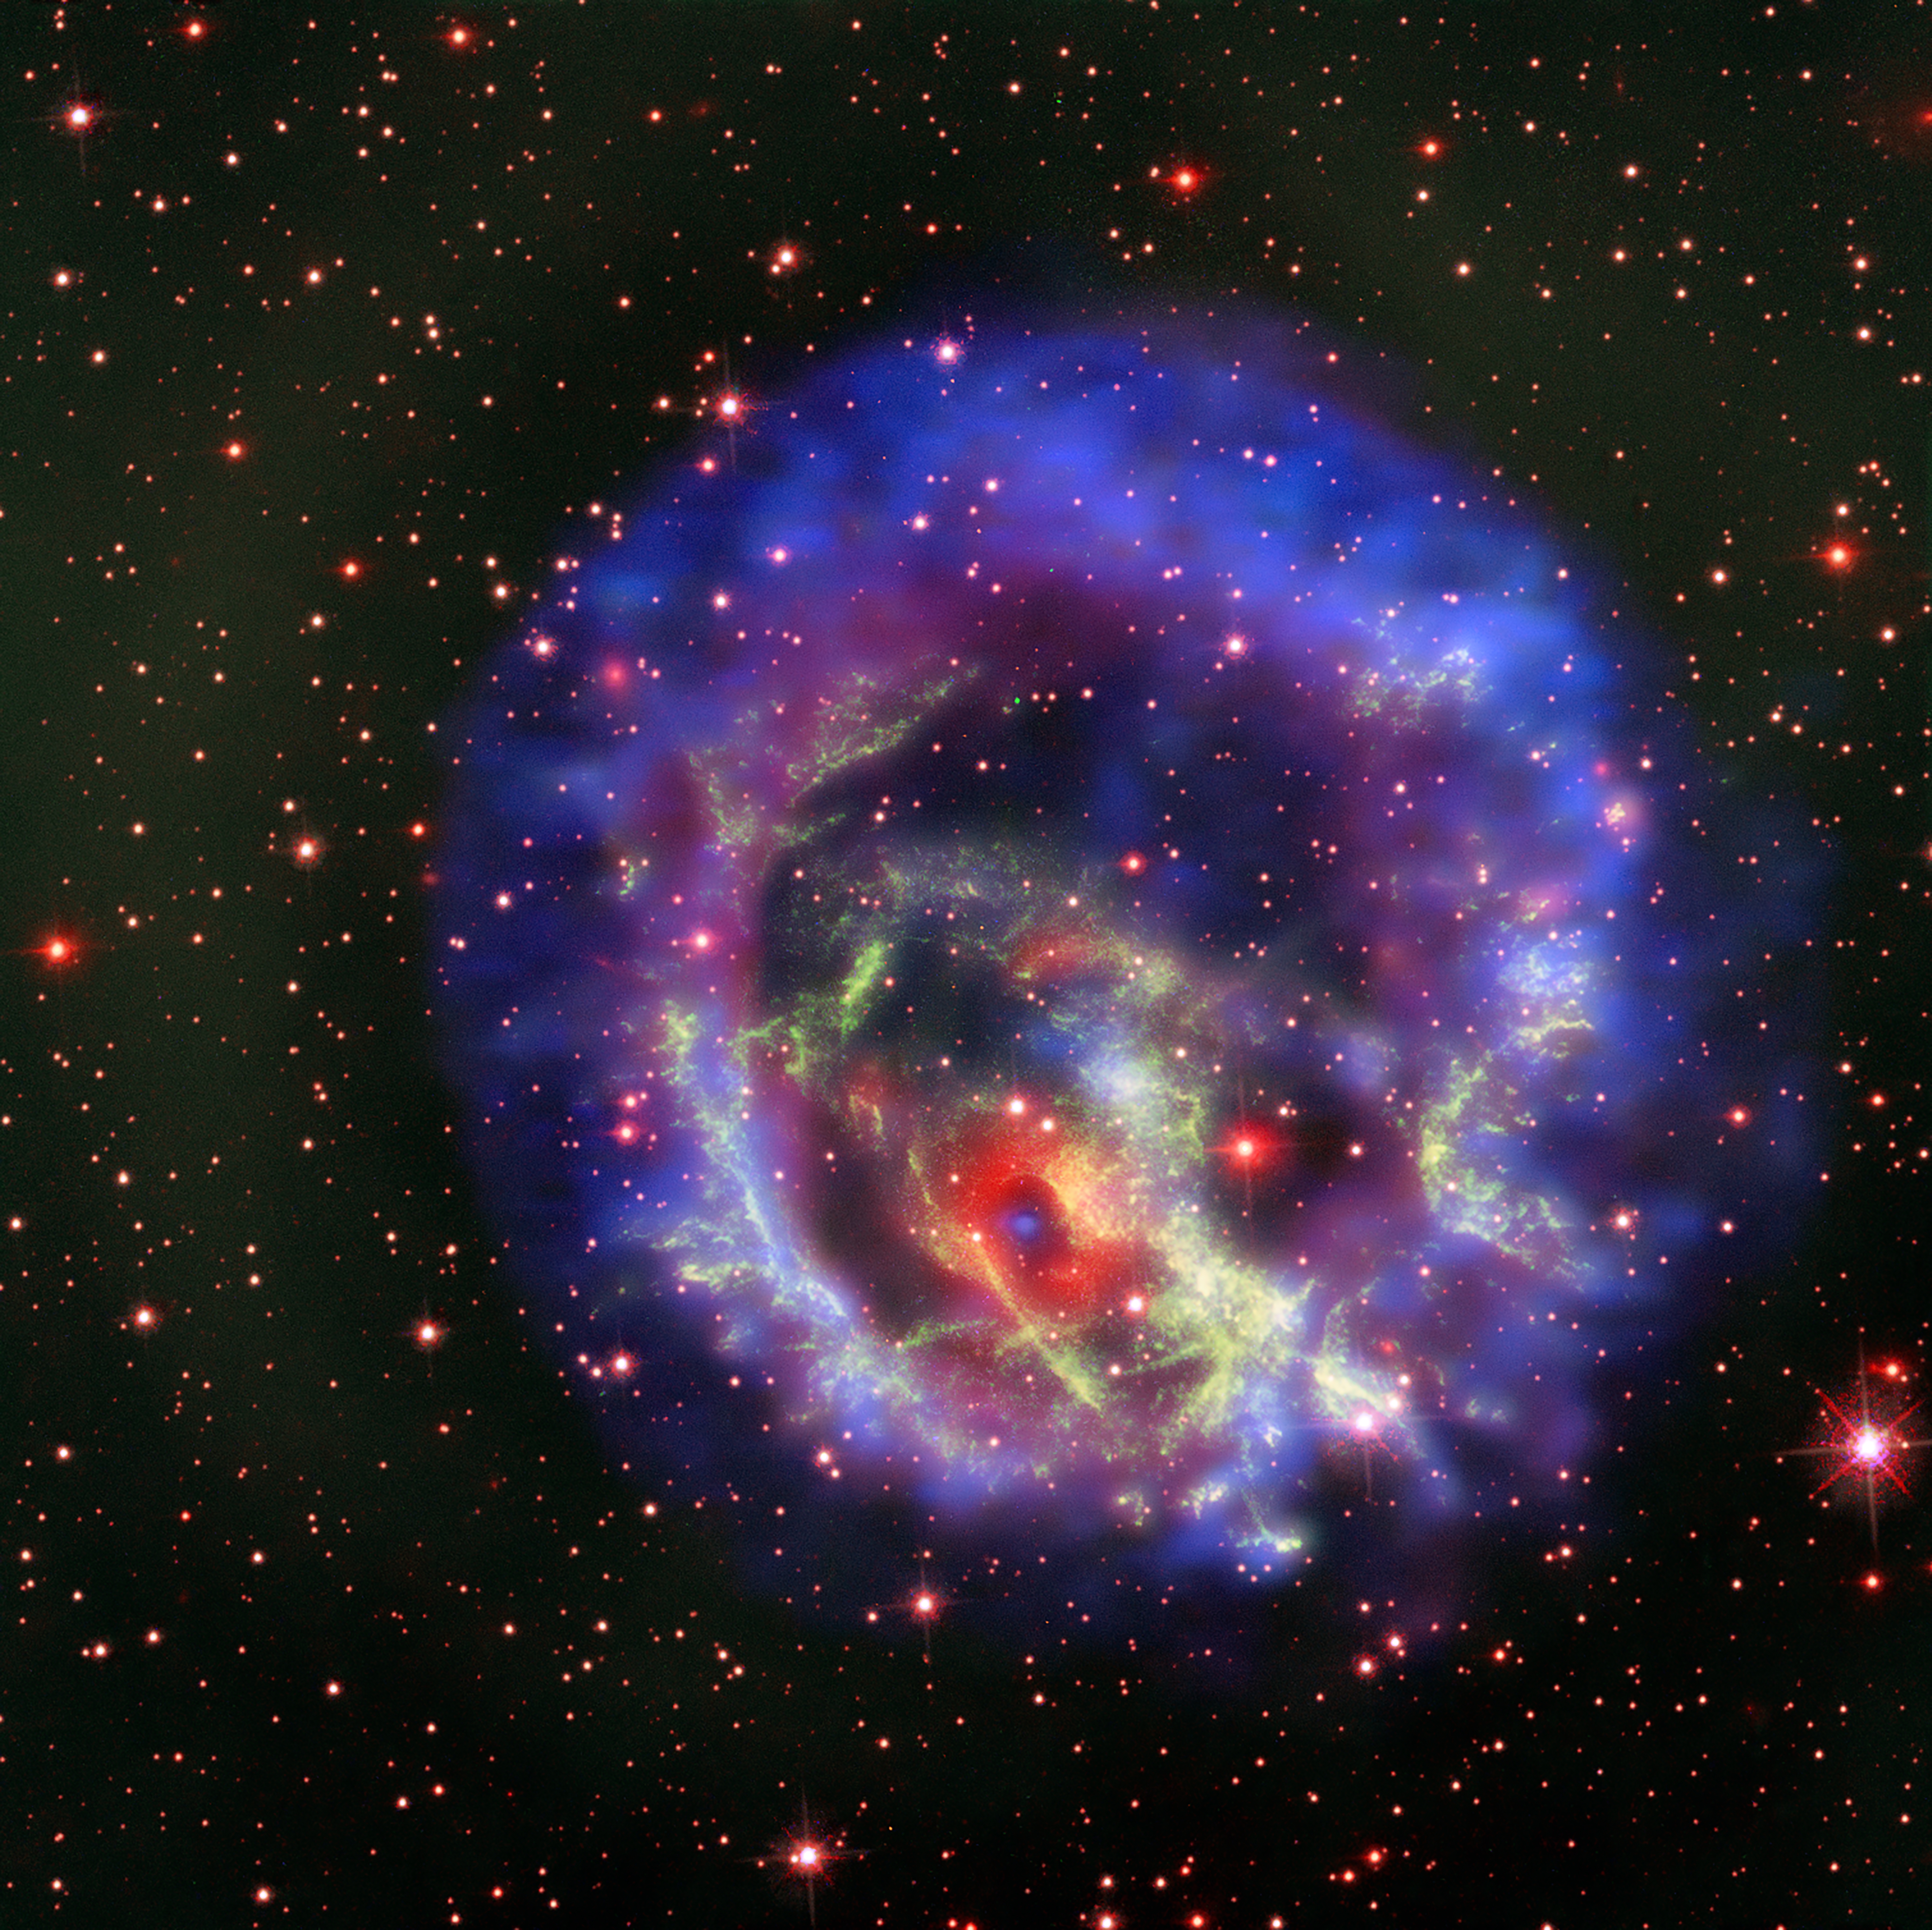 綺麗な銀河 星雲 1476 きょしちょう座 Tucana にある超新星残骸 1e 0102 2 7219 我家のｉｔ化